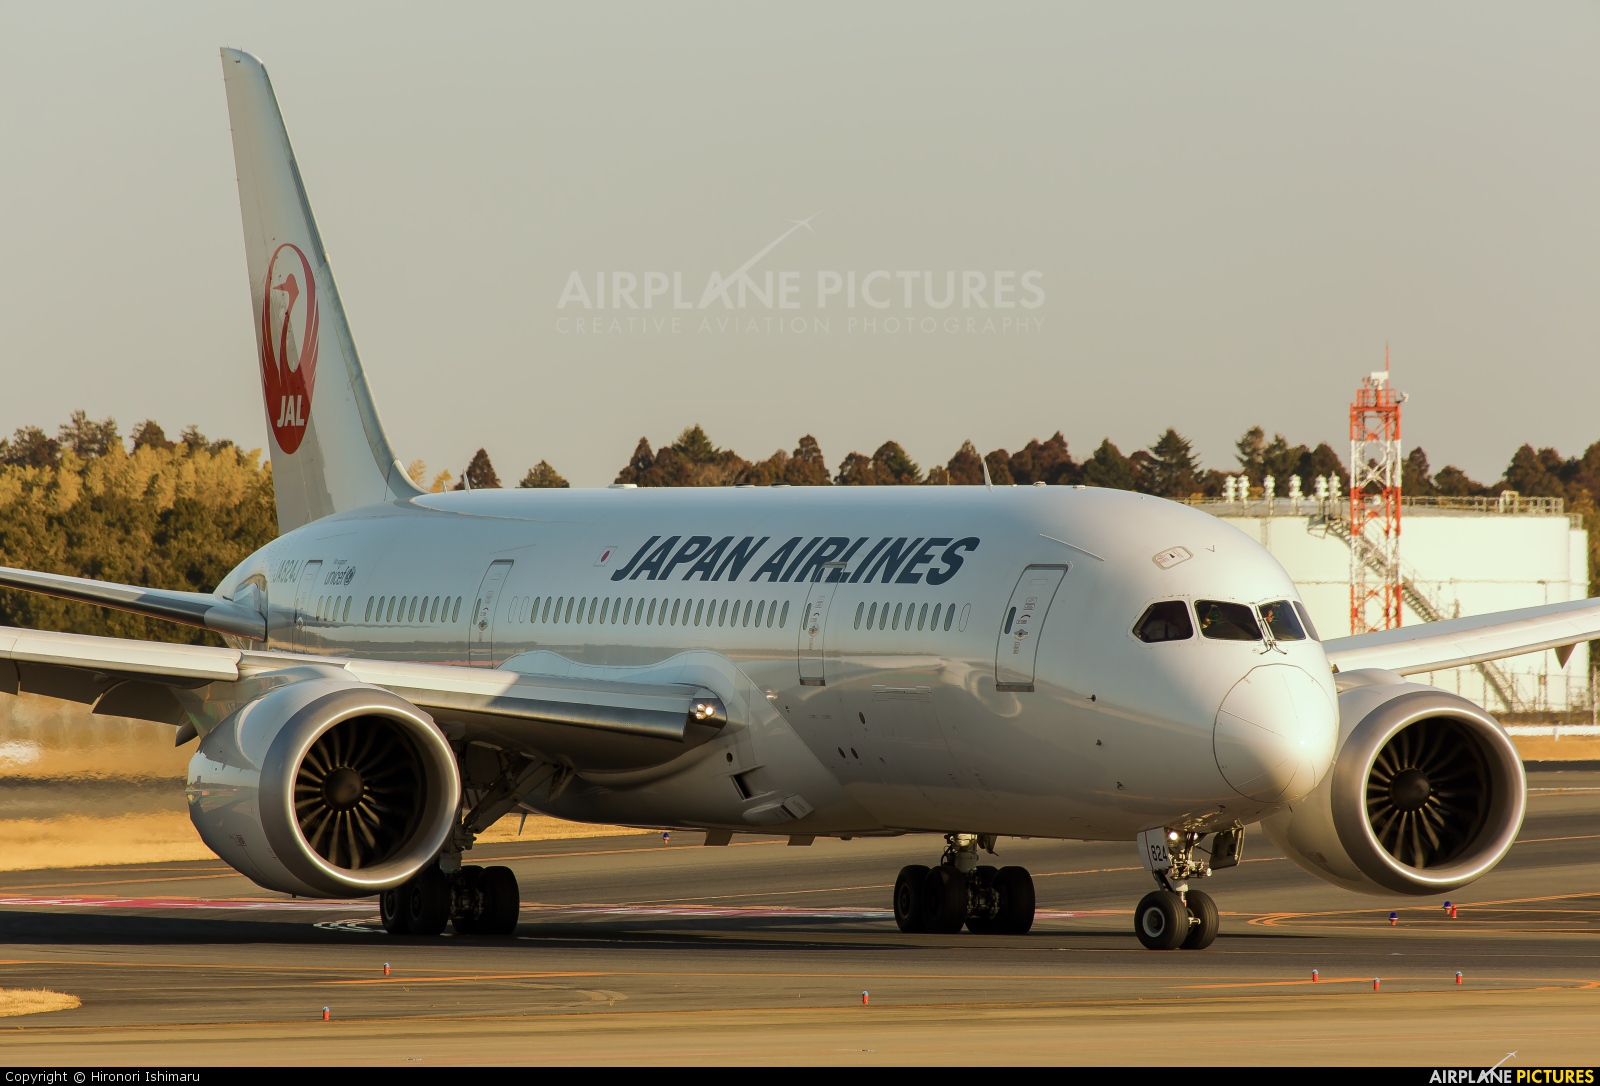 JAL - Japan Airlines JA824J aircraft at Tokyo - Narita Intl